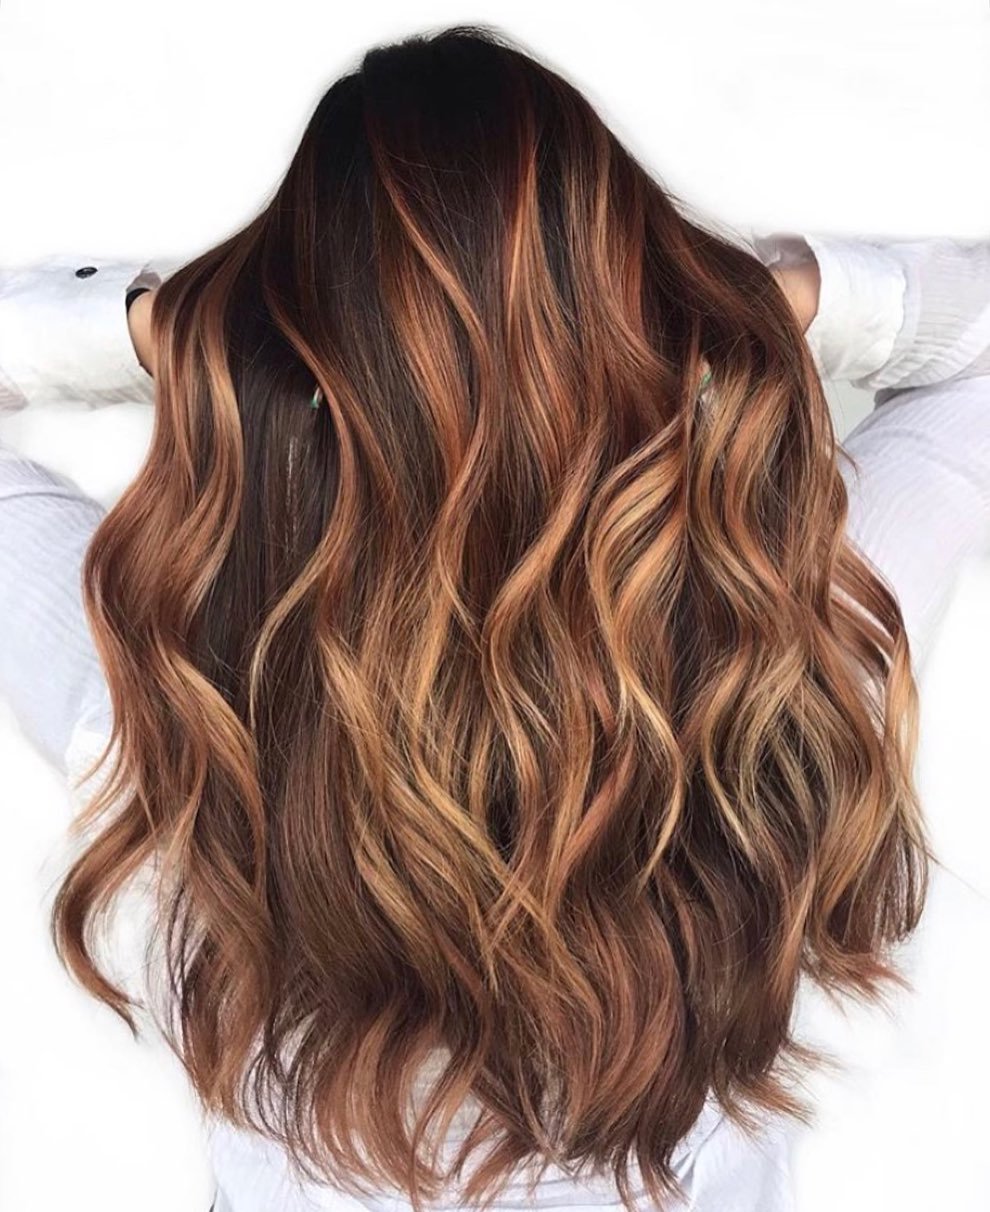 Caramel Haarfarbe Idee für braunes Haar